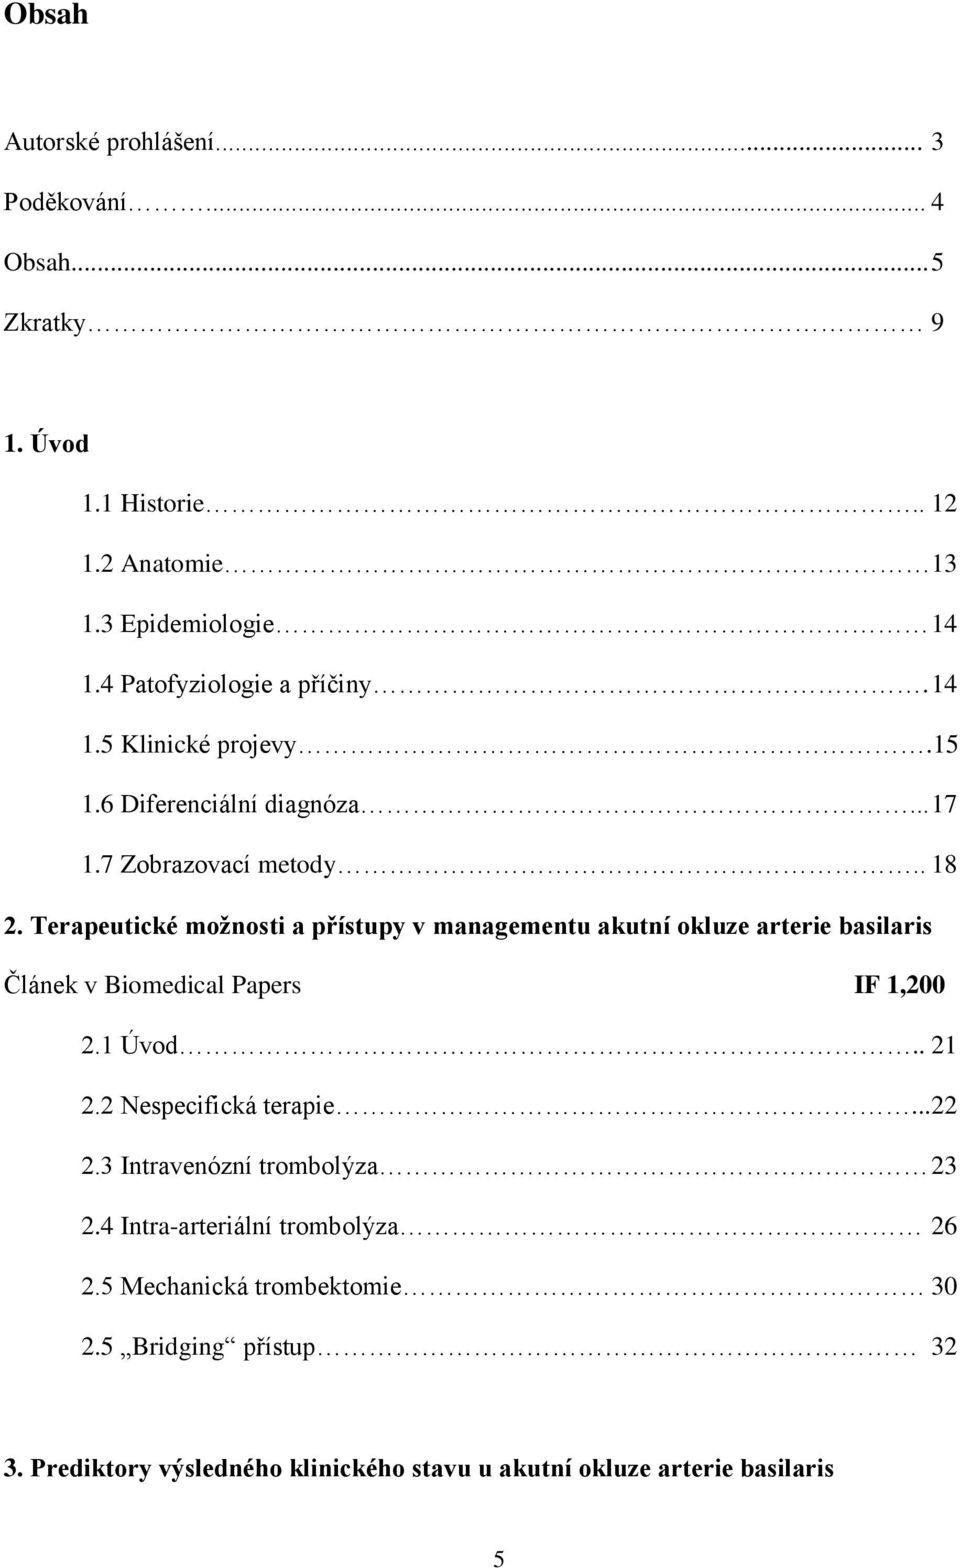 Terapeutické možnosti a přístupy v managementu akutní okluze arterie basilaris Článek v Biomedical Papers IF 1,200 2.1 Úvod.. 21 2.